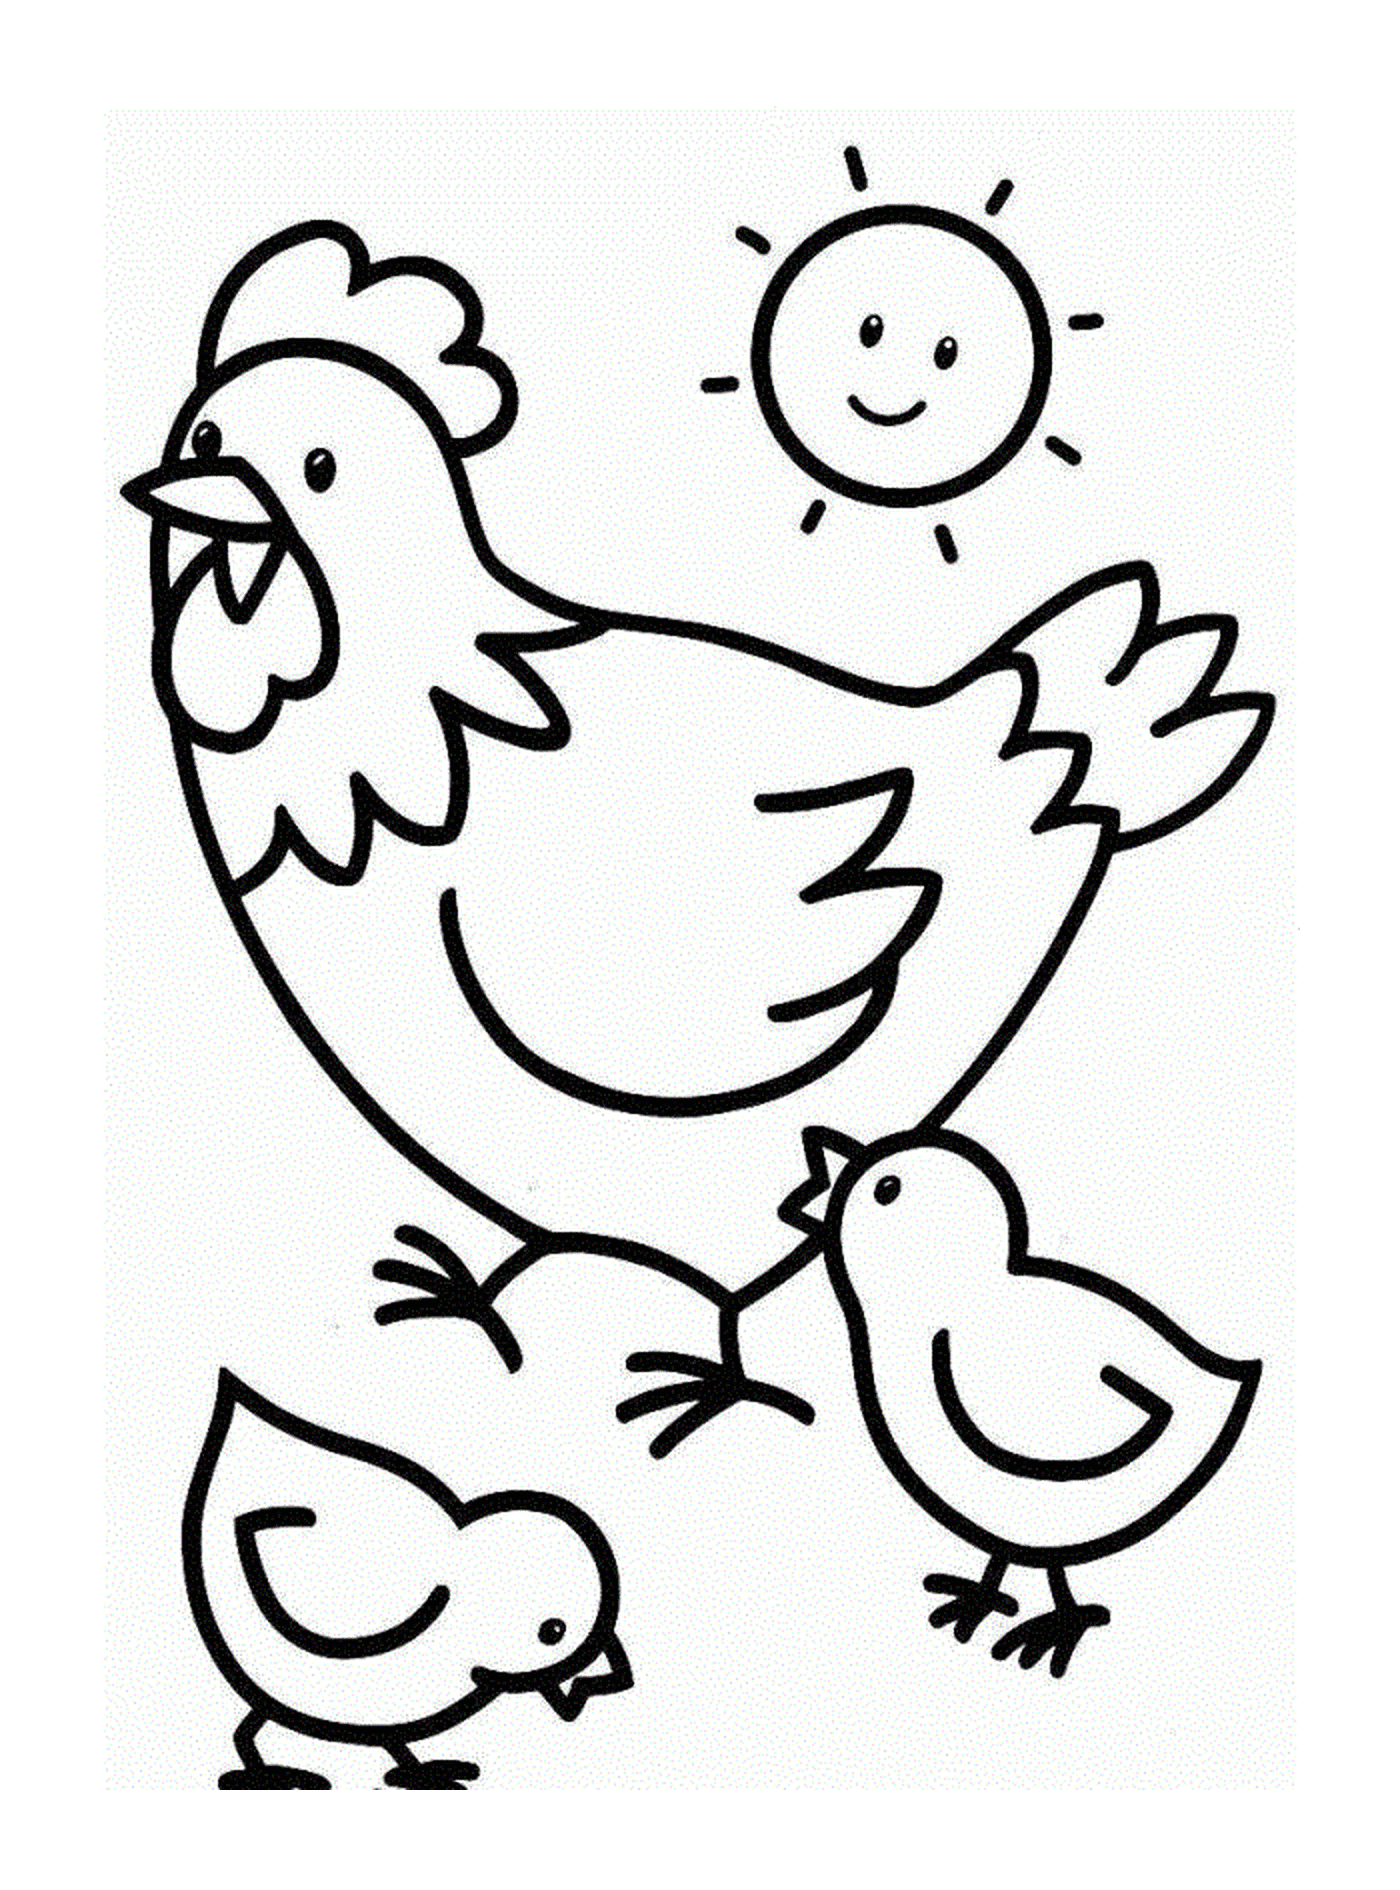  दो बच्चों के साथ मुर्गी 